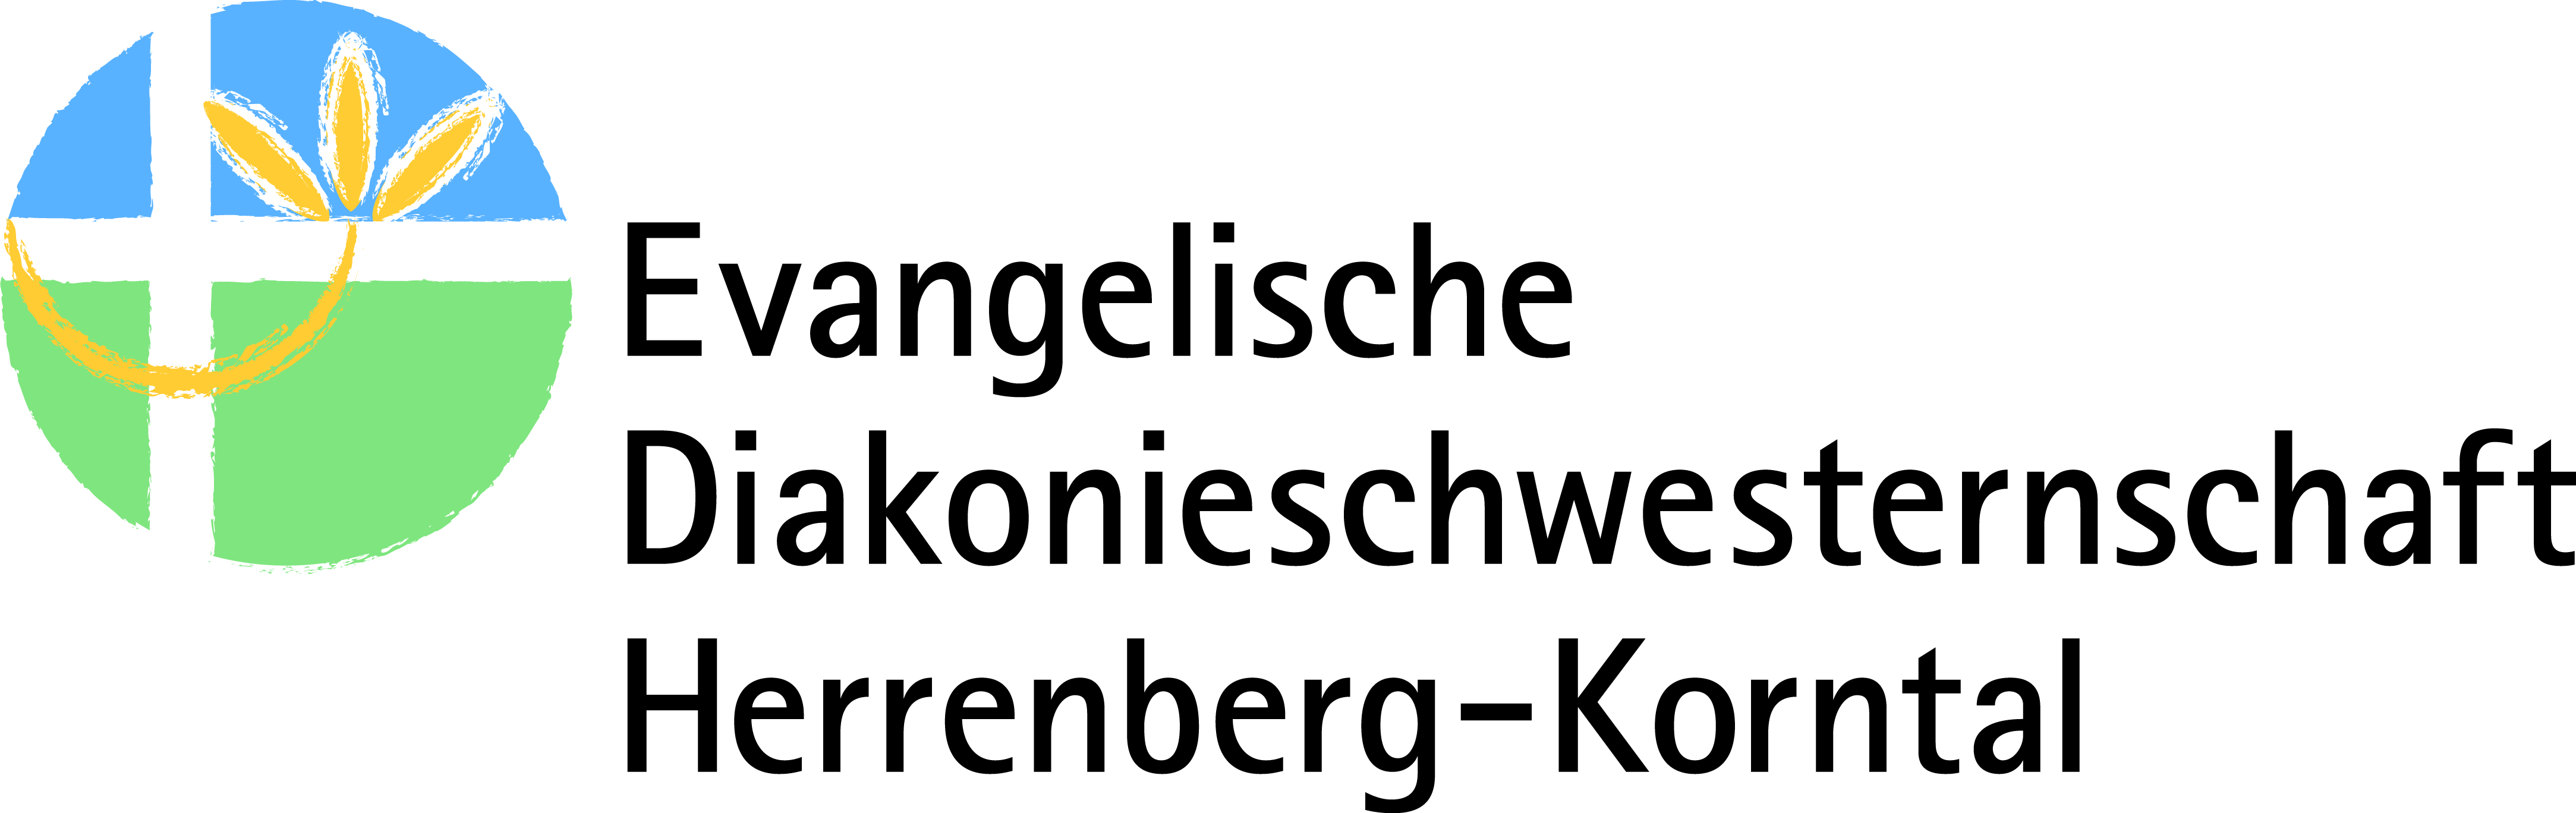 Logo: Evangelische Diakonieschwesternschaft Herrenberg-Korntal e.V.